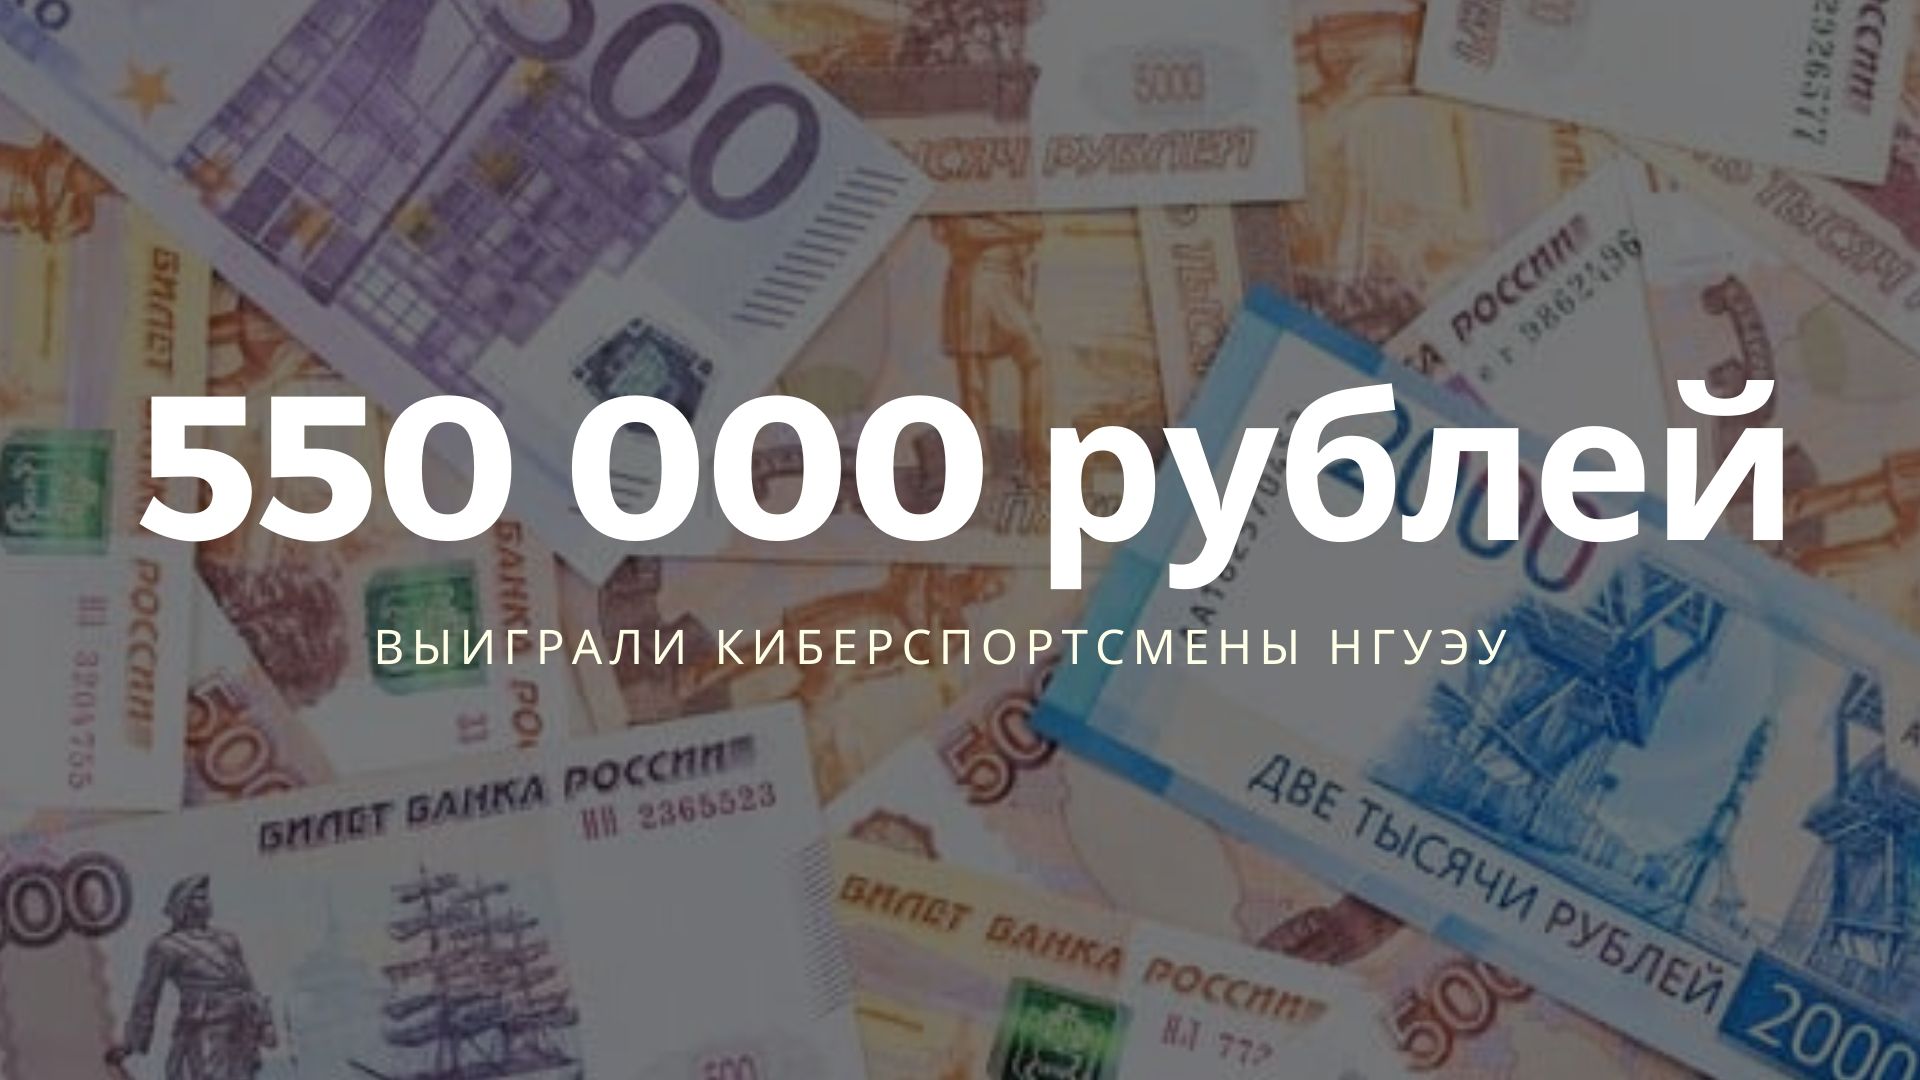  Сборная НГУЭУ по киберспорту выиграла 550 000 рублей в лиге QUAZAR.GG